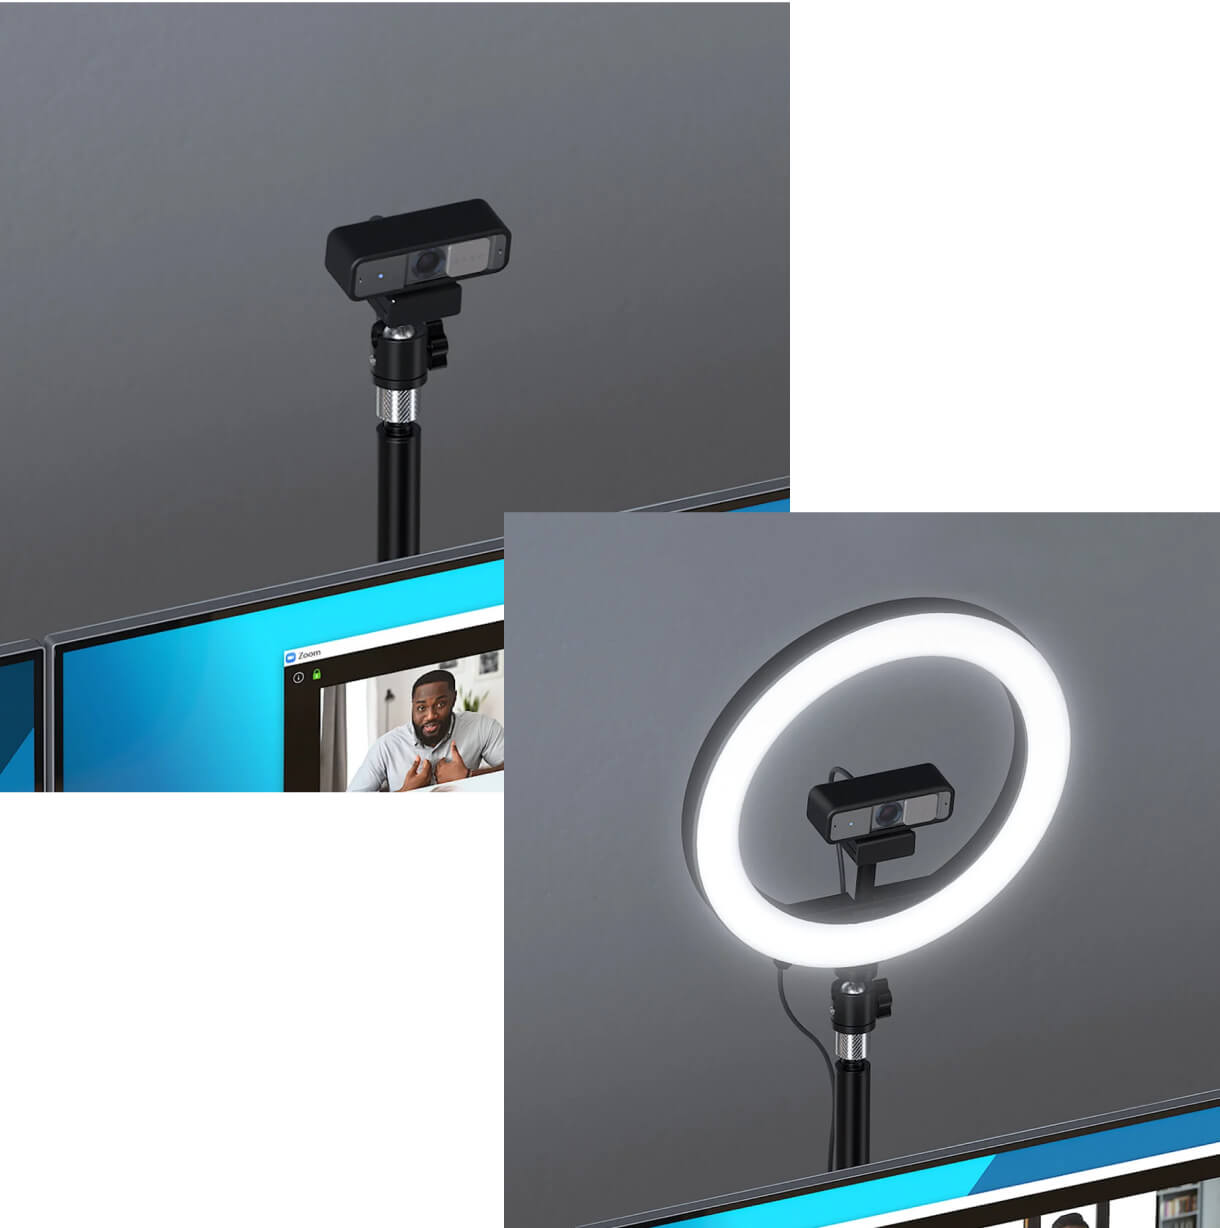 Professionelles Desktop-Setup mit Kensington W2050 Pro 1080p Auto Focus Webcam, L1000 Bicolor Ringlicht mit Webcamhalterung, A1000 Teleskop Tischständer mit C-Klemme, Universal 3-in-1 Pro Audio Headset Switch
                            